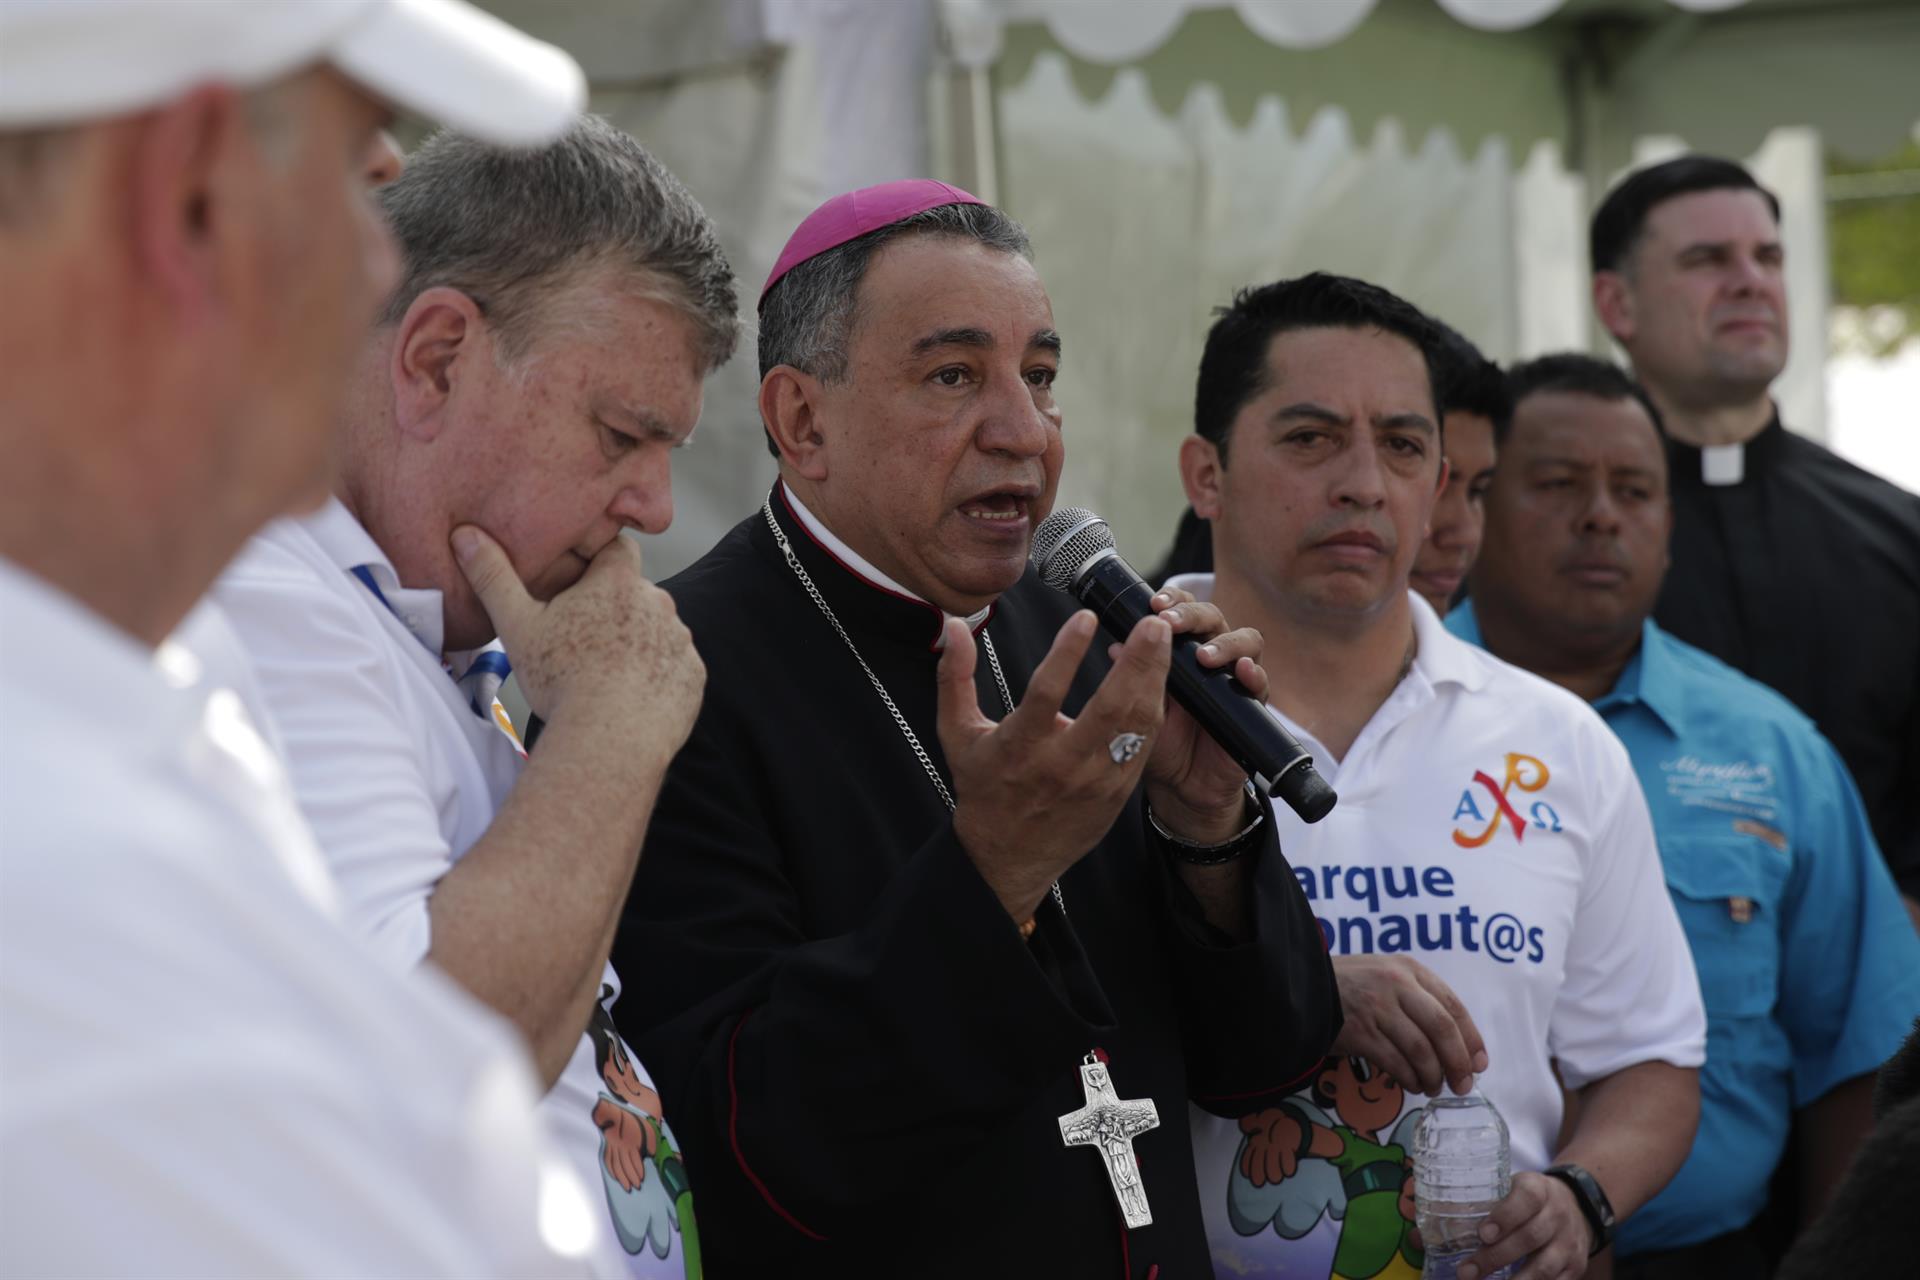 El arzobispo de Panamá denunció “hechos aberrantes” contra la Iglesia católica en Nicaragua